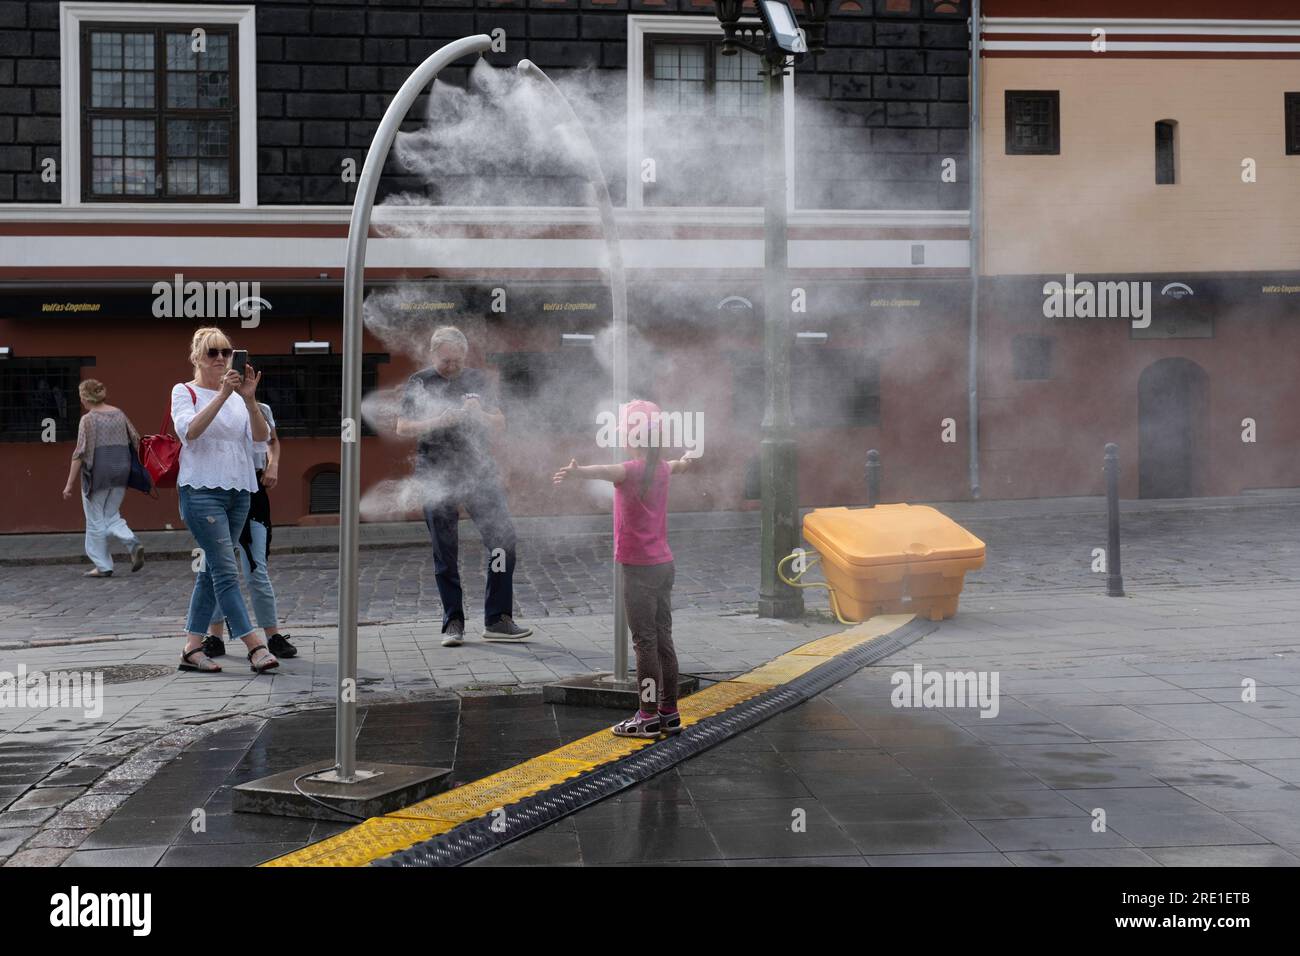 La ragazza viene raffreddata da un'installazione di spruzzi d'acqua su una piazza a Kaunas. I suoi genitori la fotografano. Pericolo di contaminazione da Legionella Foto Stock